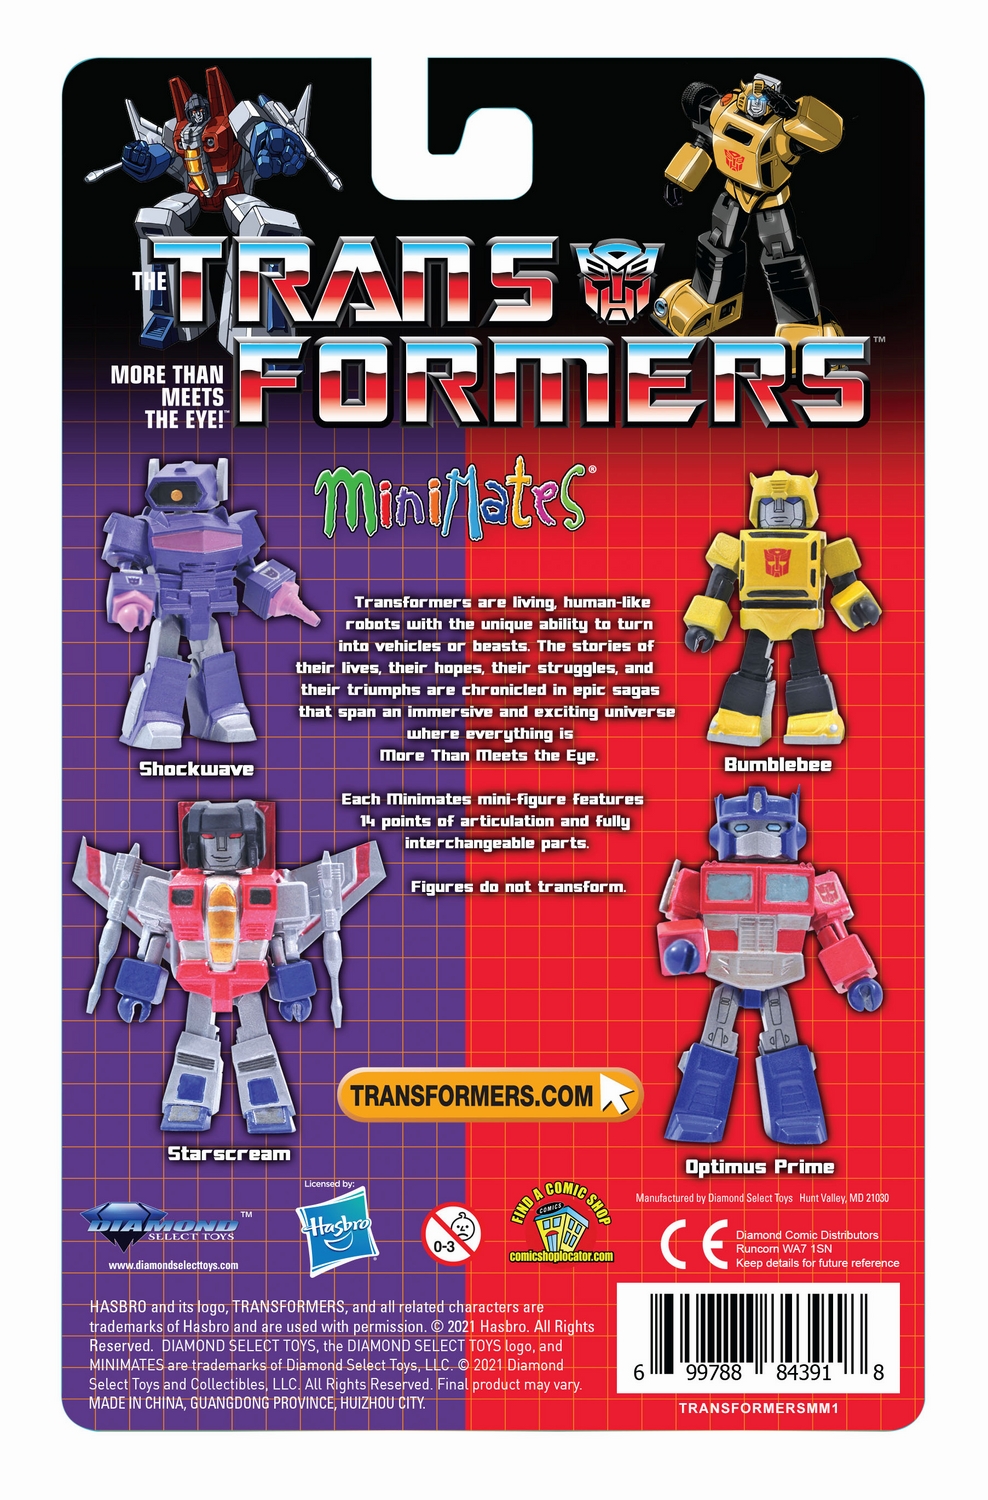 TransformersMinimatesSpecialtyBack.jpg